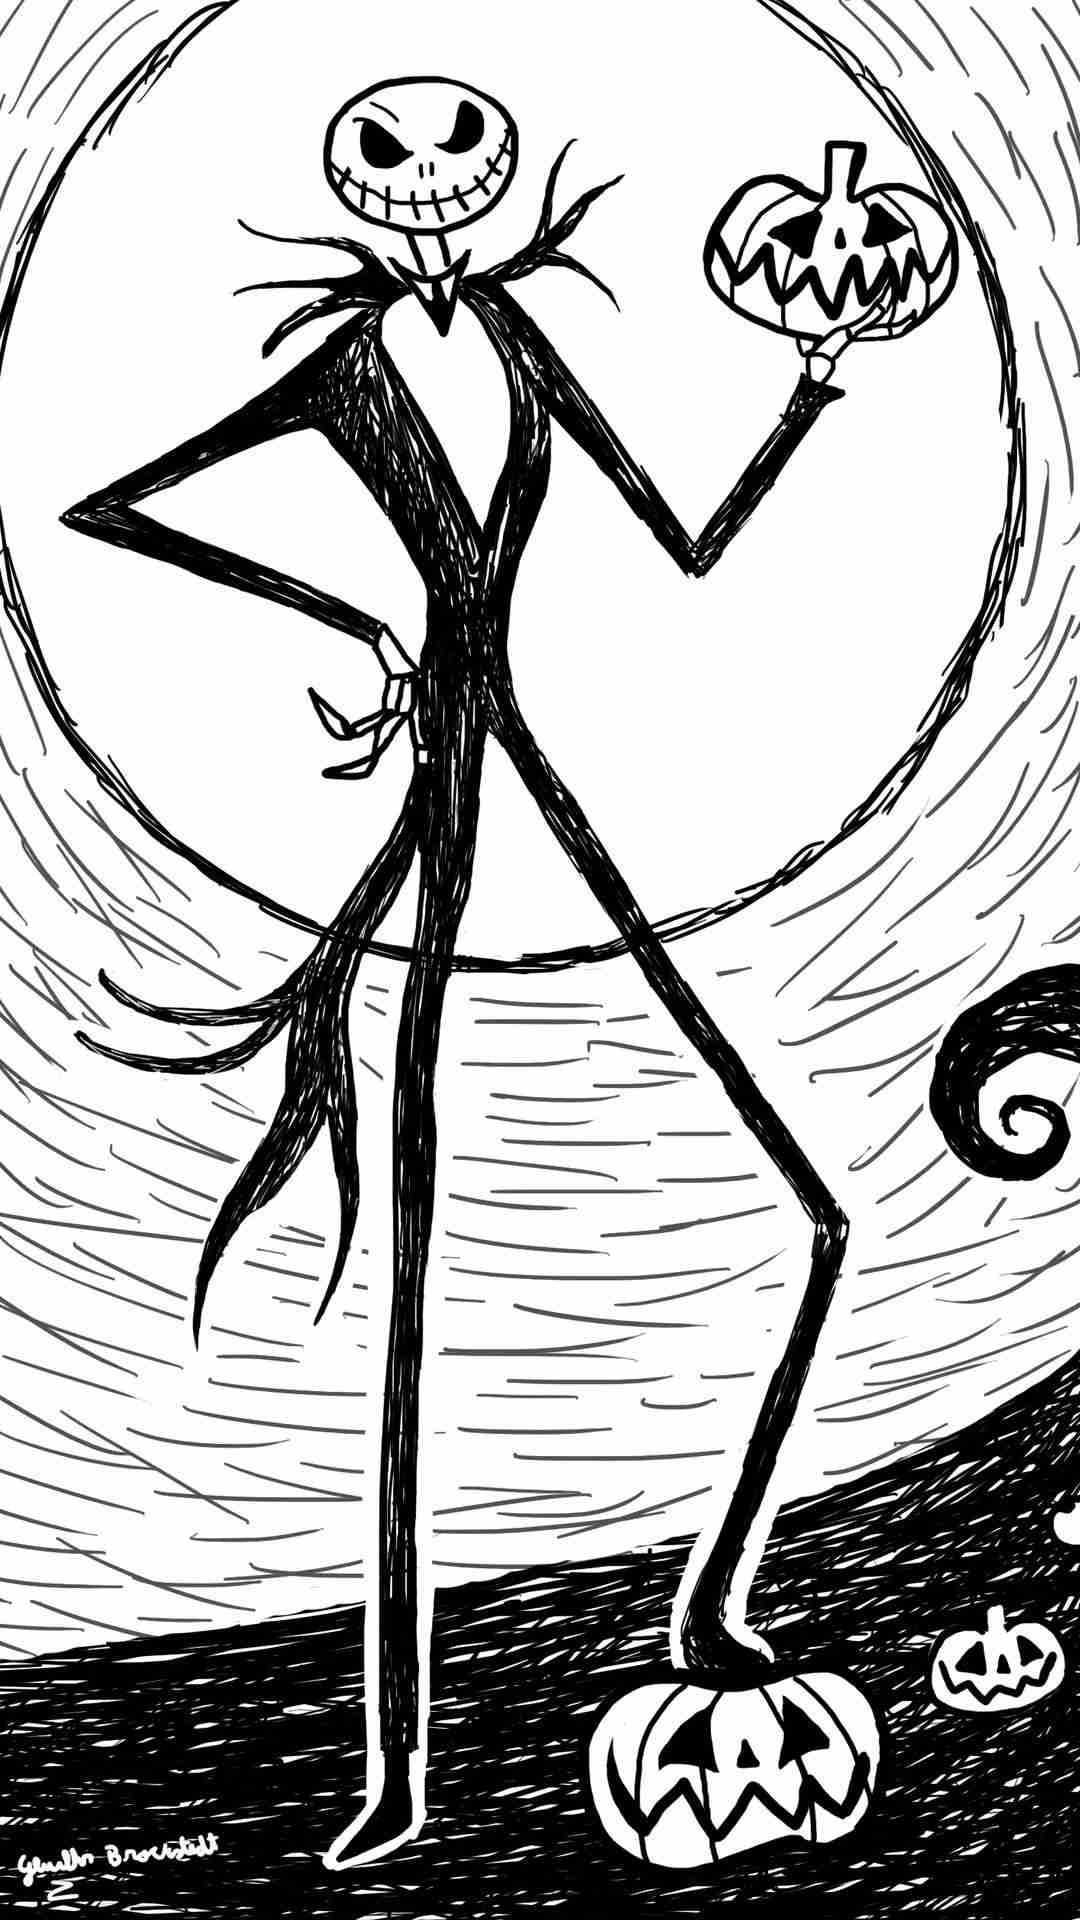 jack skelett tapete,strichzeichnungen,karikatur,schwarz und weiß,illustration,erfundener charakter